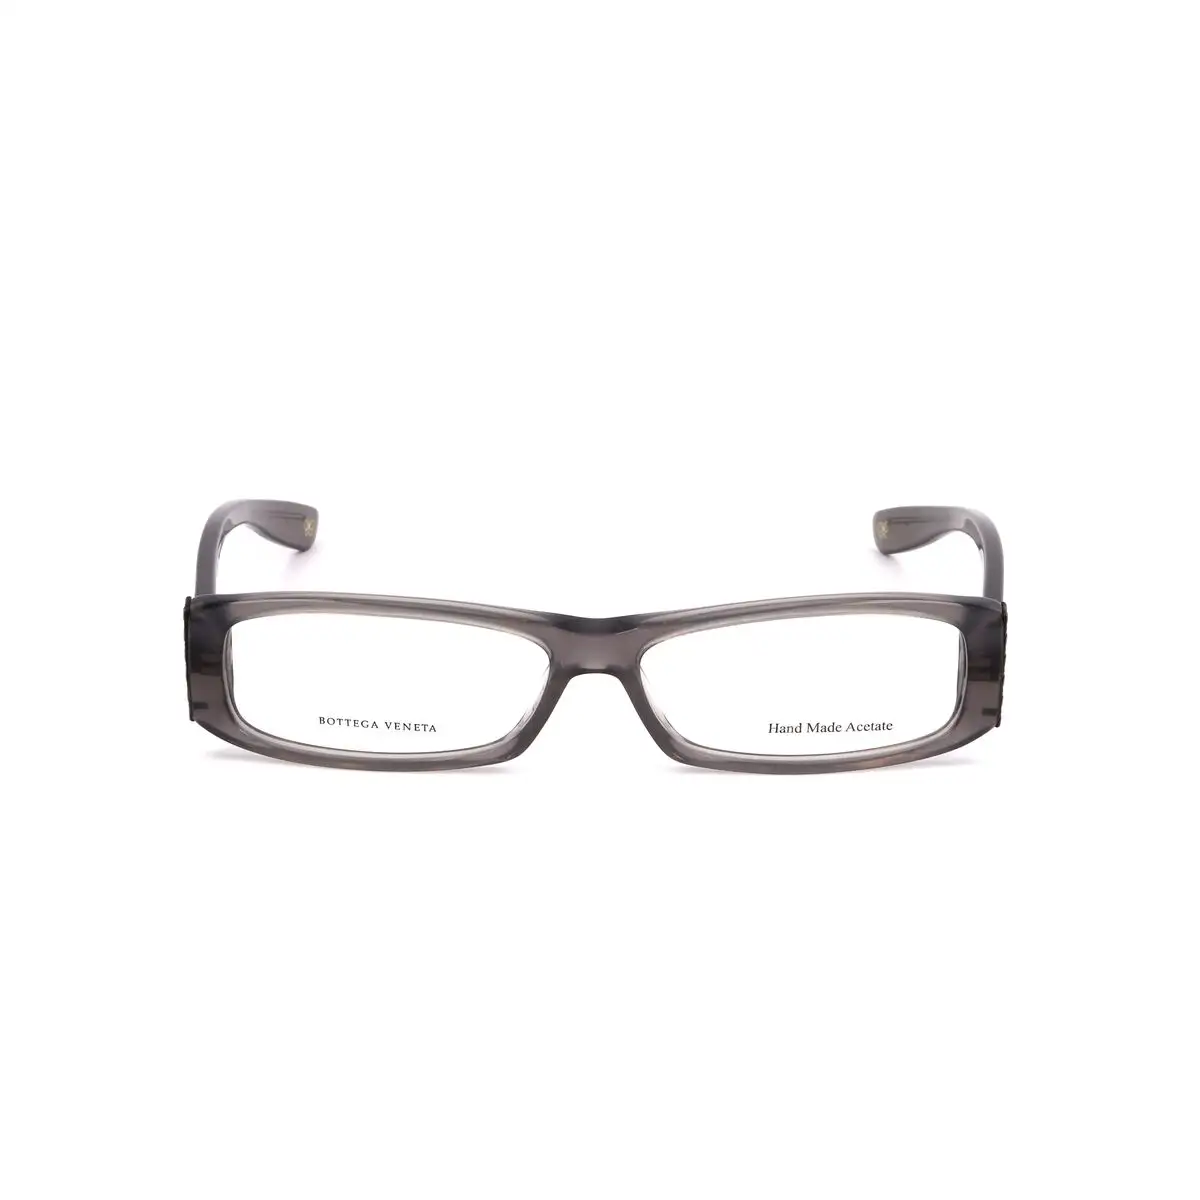 Monture de lunettes femme bottega veneta bv 135 typ gris_7587. Bienvenue sur DIAYTAR SENEGAL - Où Choisir est un Voyage Sensoriel. Plongez dans notre catalogue et trouvez des produits qui éveillent vos sens et embellissent votre quotidien.